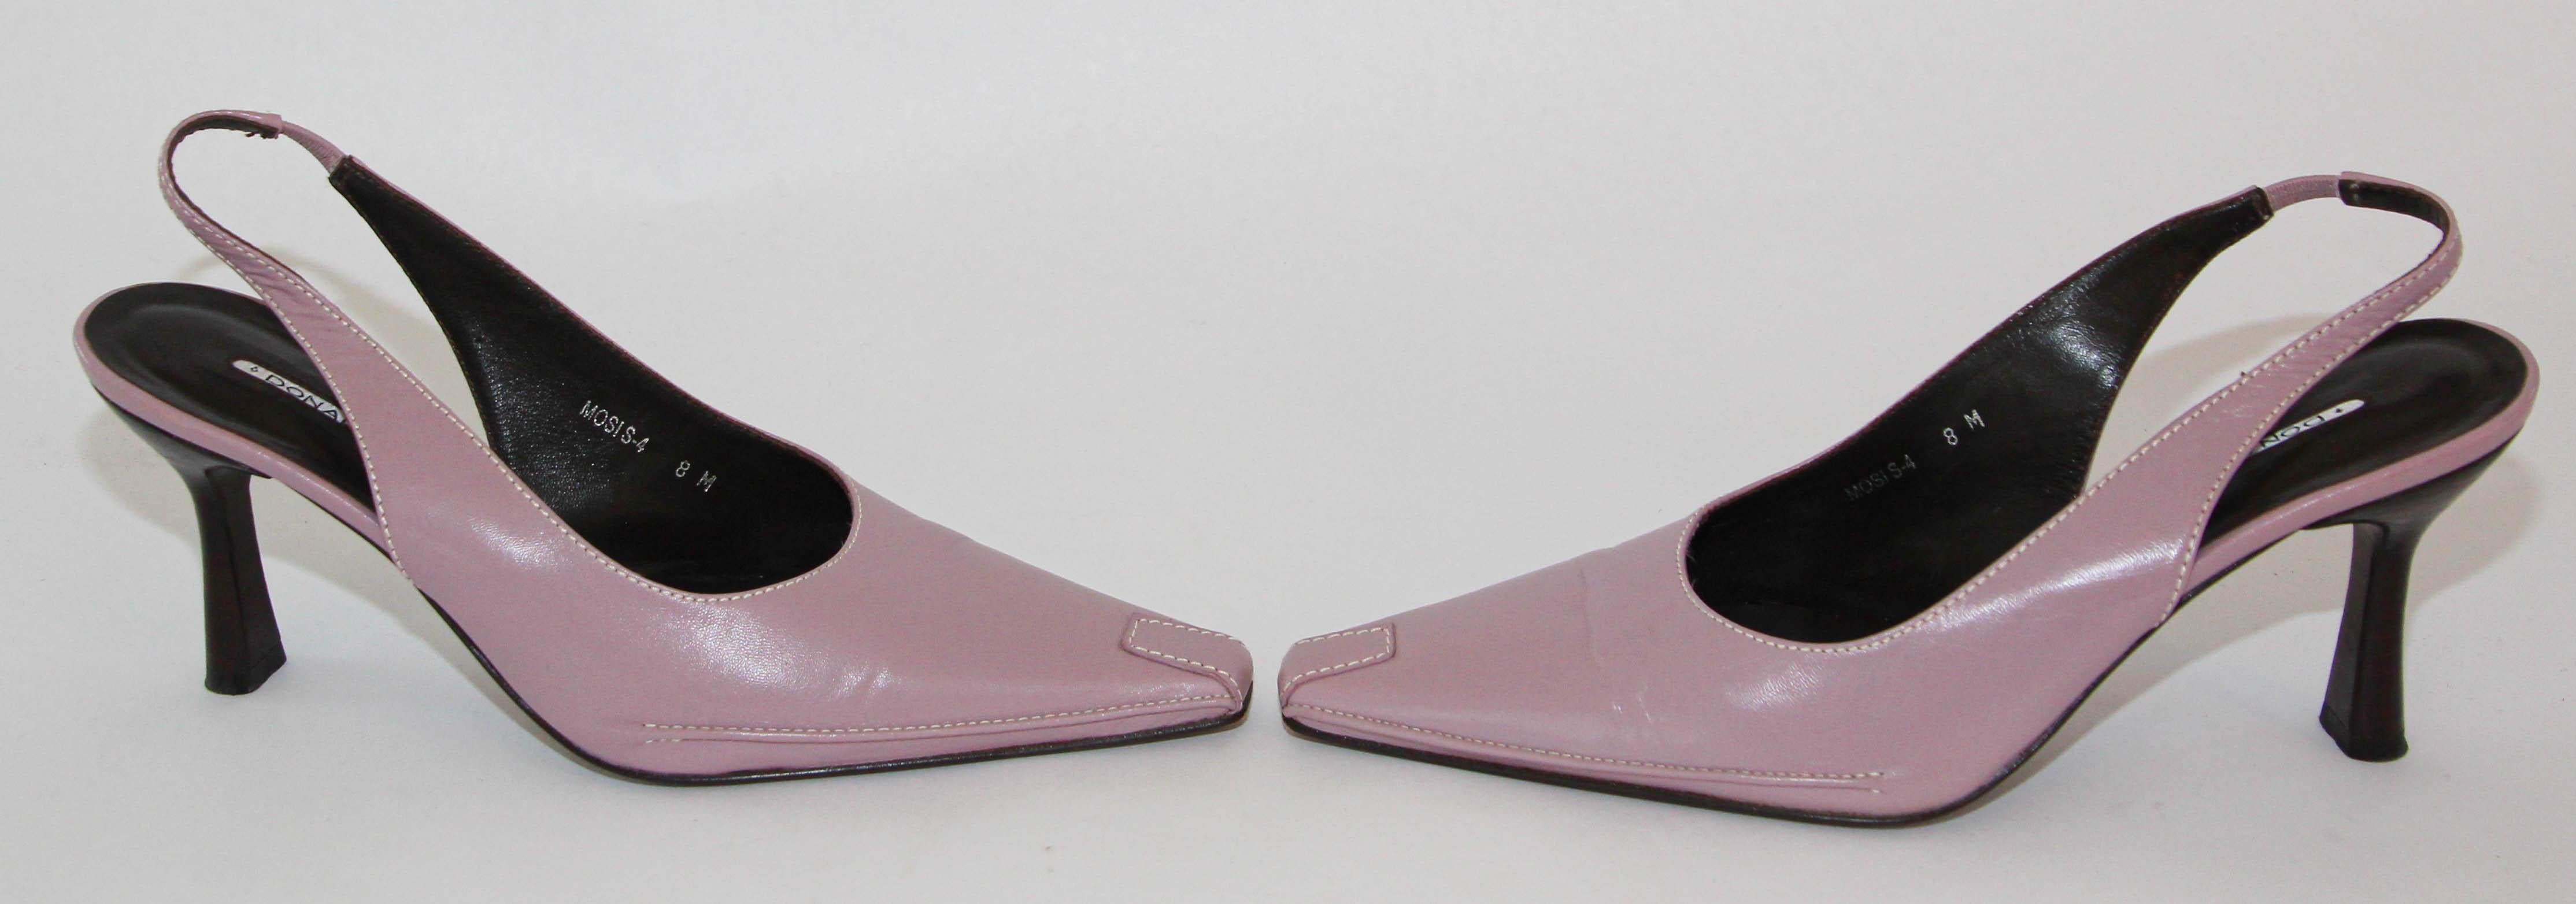 blush pink sling back shoes